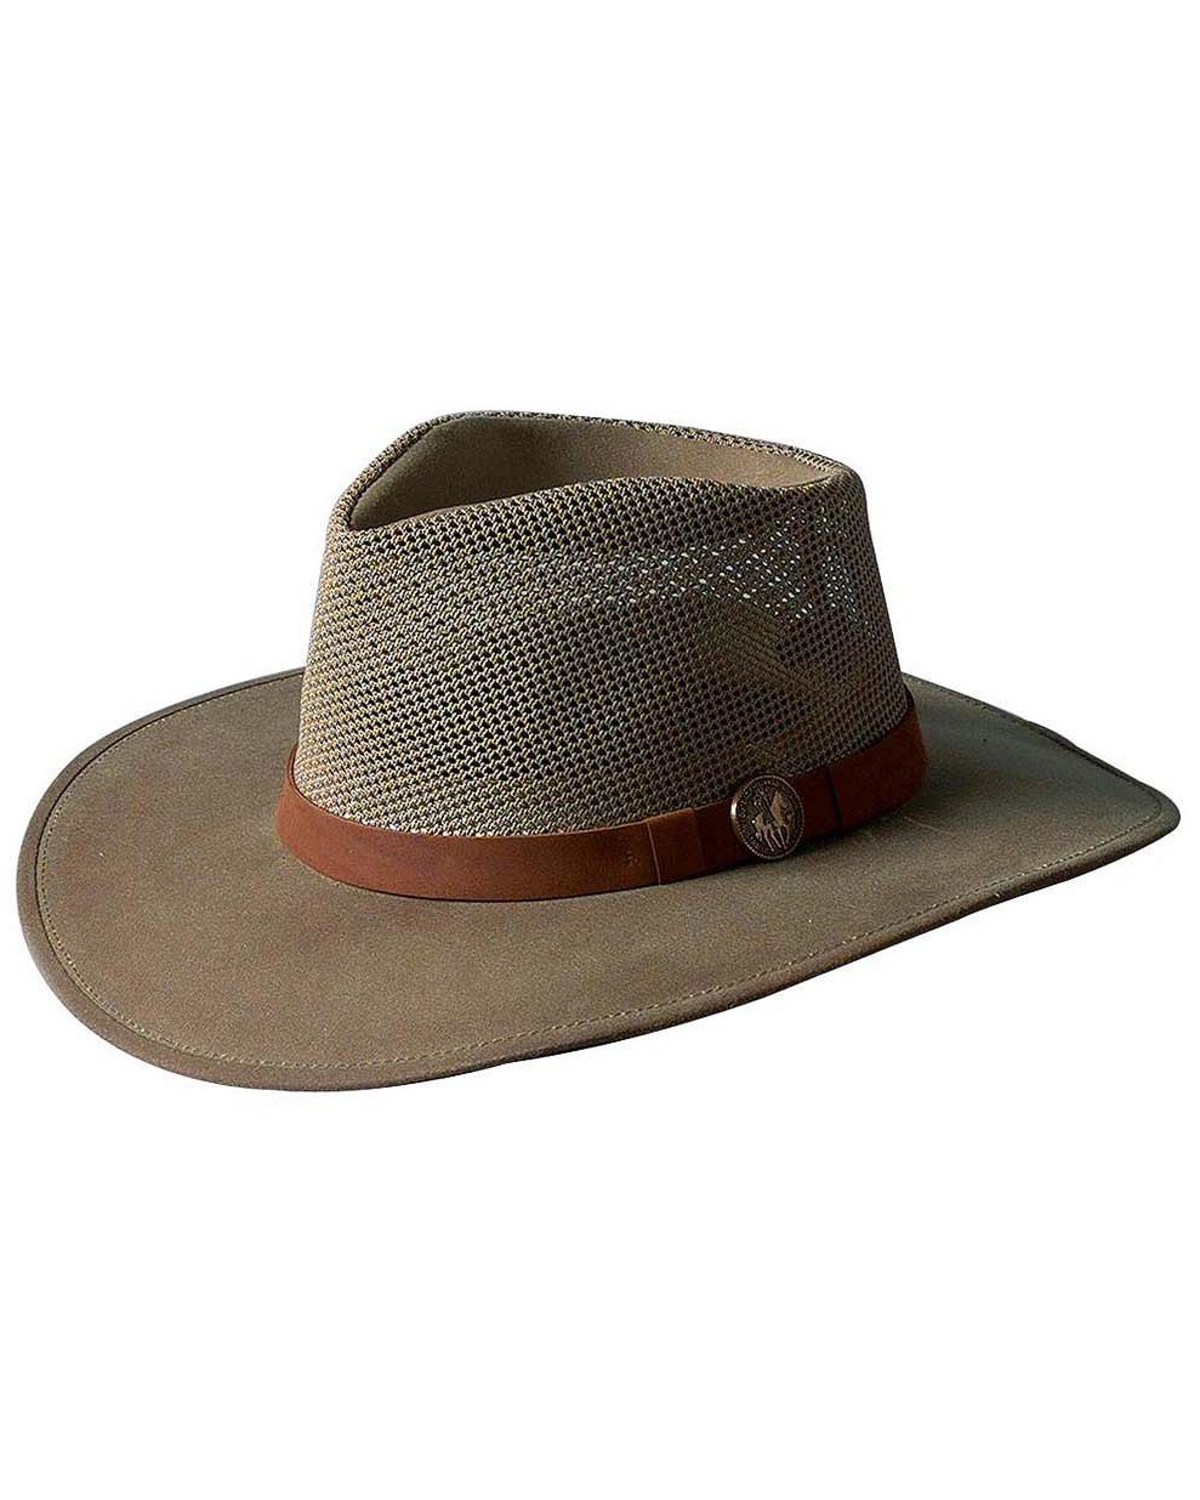 Outback Trading Co. Men's Oilskin Kodiak Hat